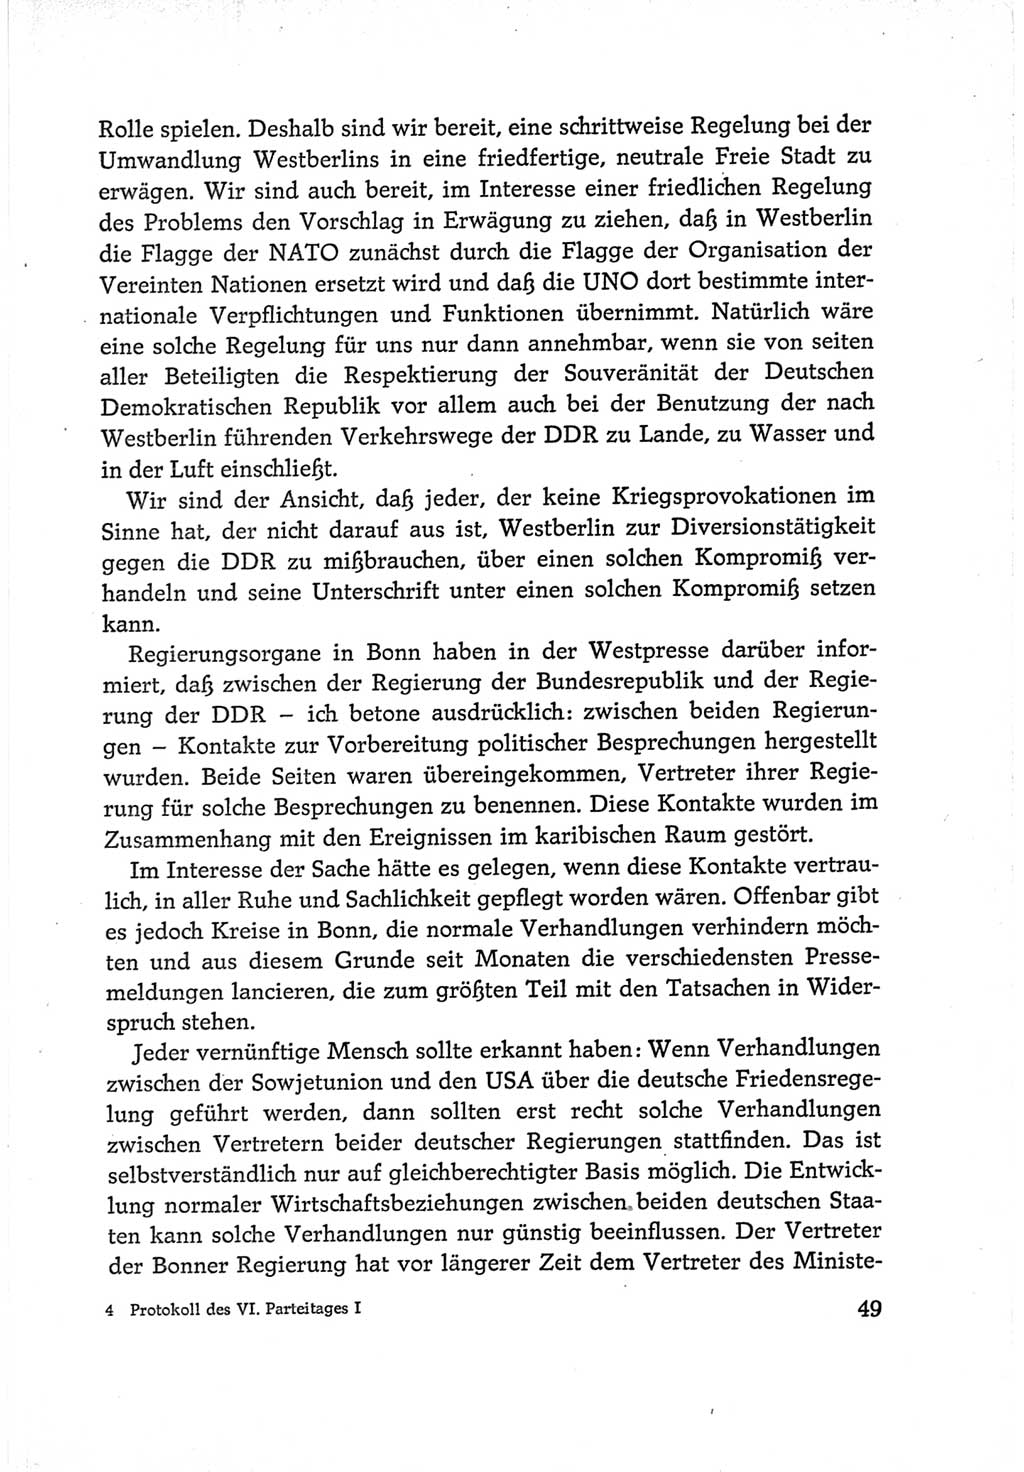 Protokoll der Verhandlungen des Ⅵ. Parteitages der Sozialistischen Einheitspartei Deutschlands (SED) [Deutsche Demokratische Republik (DDR)] 1963, Band Ⅰ, Seite 49 (Prot. Verh. Ⅵ. PT SED DDR 1963, Bd. Ⅰ, S. 49)